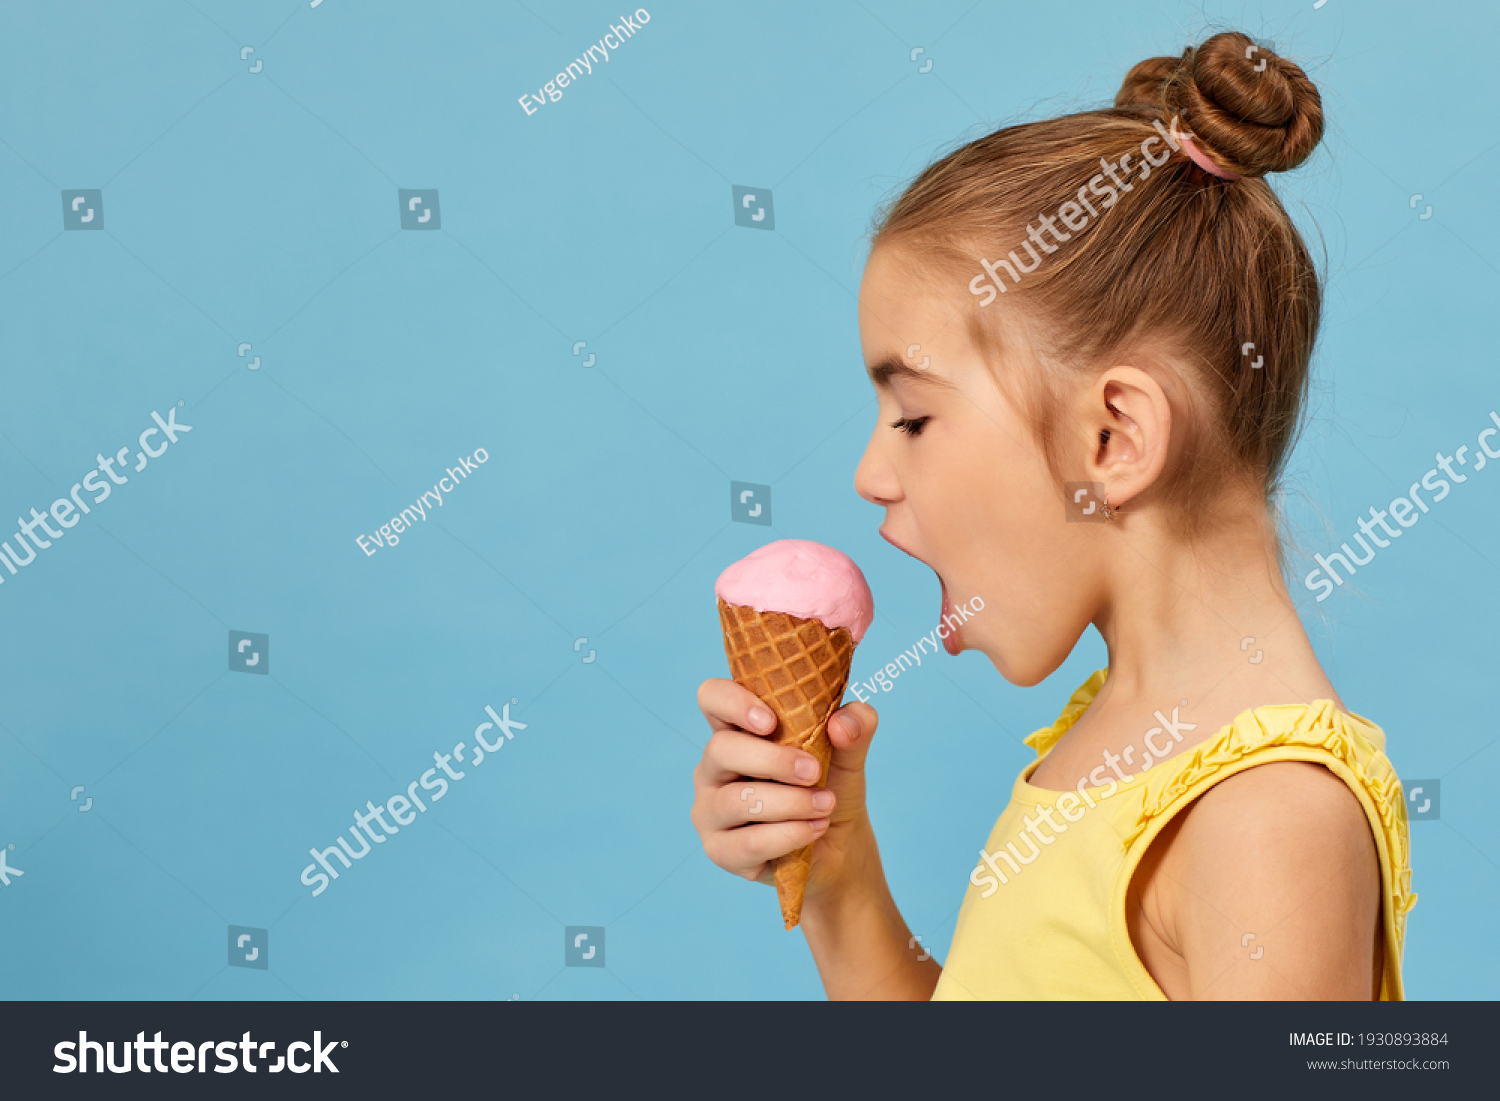 Полизать маленькой девочке. Маленькая девочка ест мороженое. Маленькая девочка и мороженое. Маленькая девочка облизывает мороженое. Ребенок с мороженым.